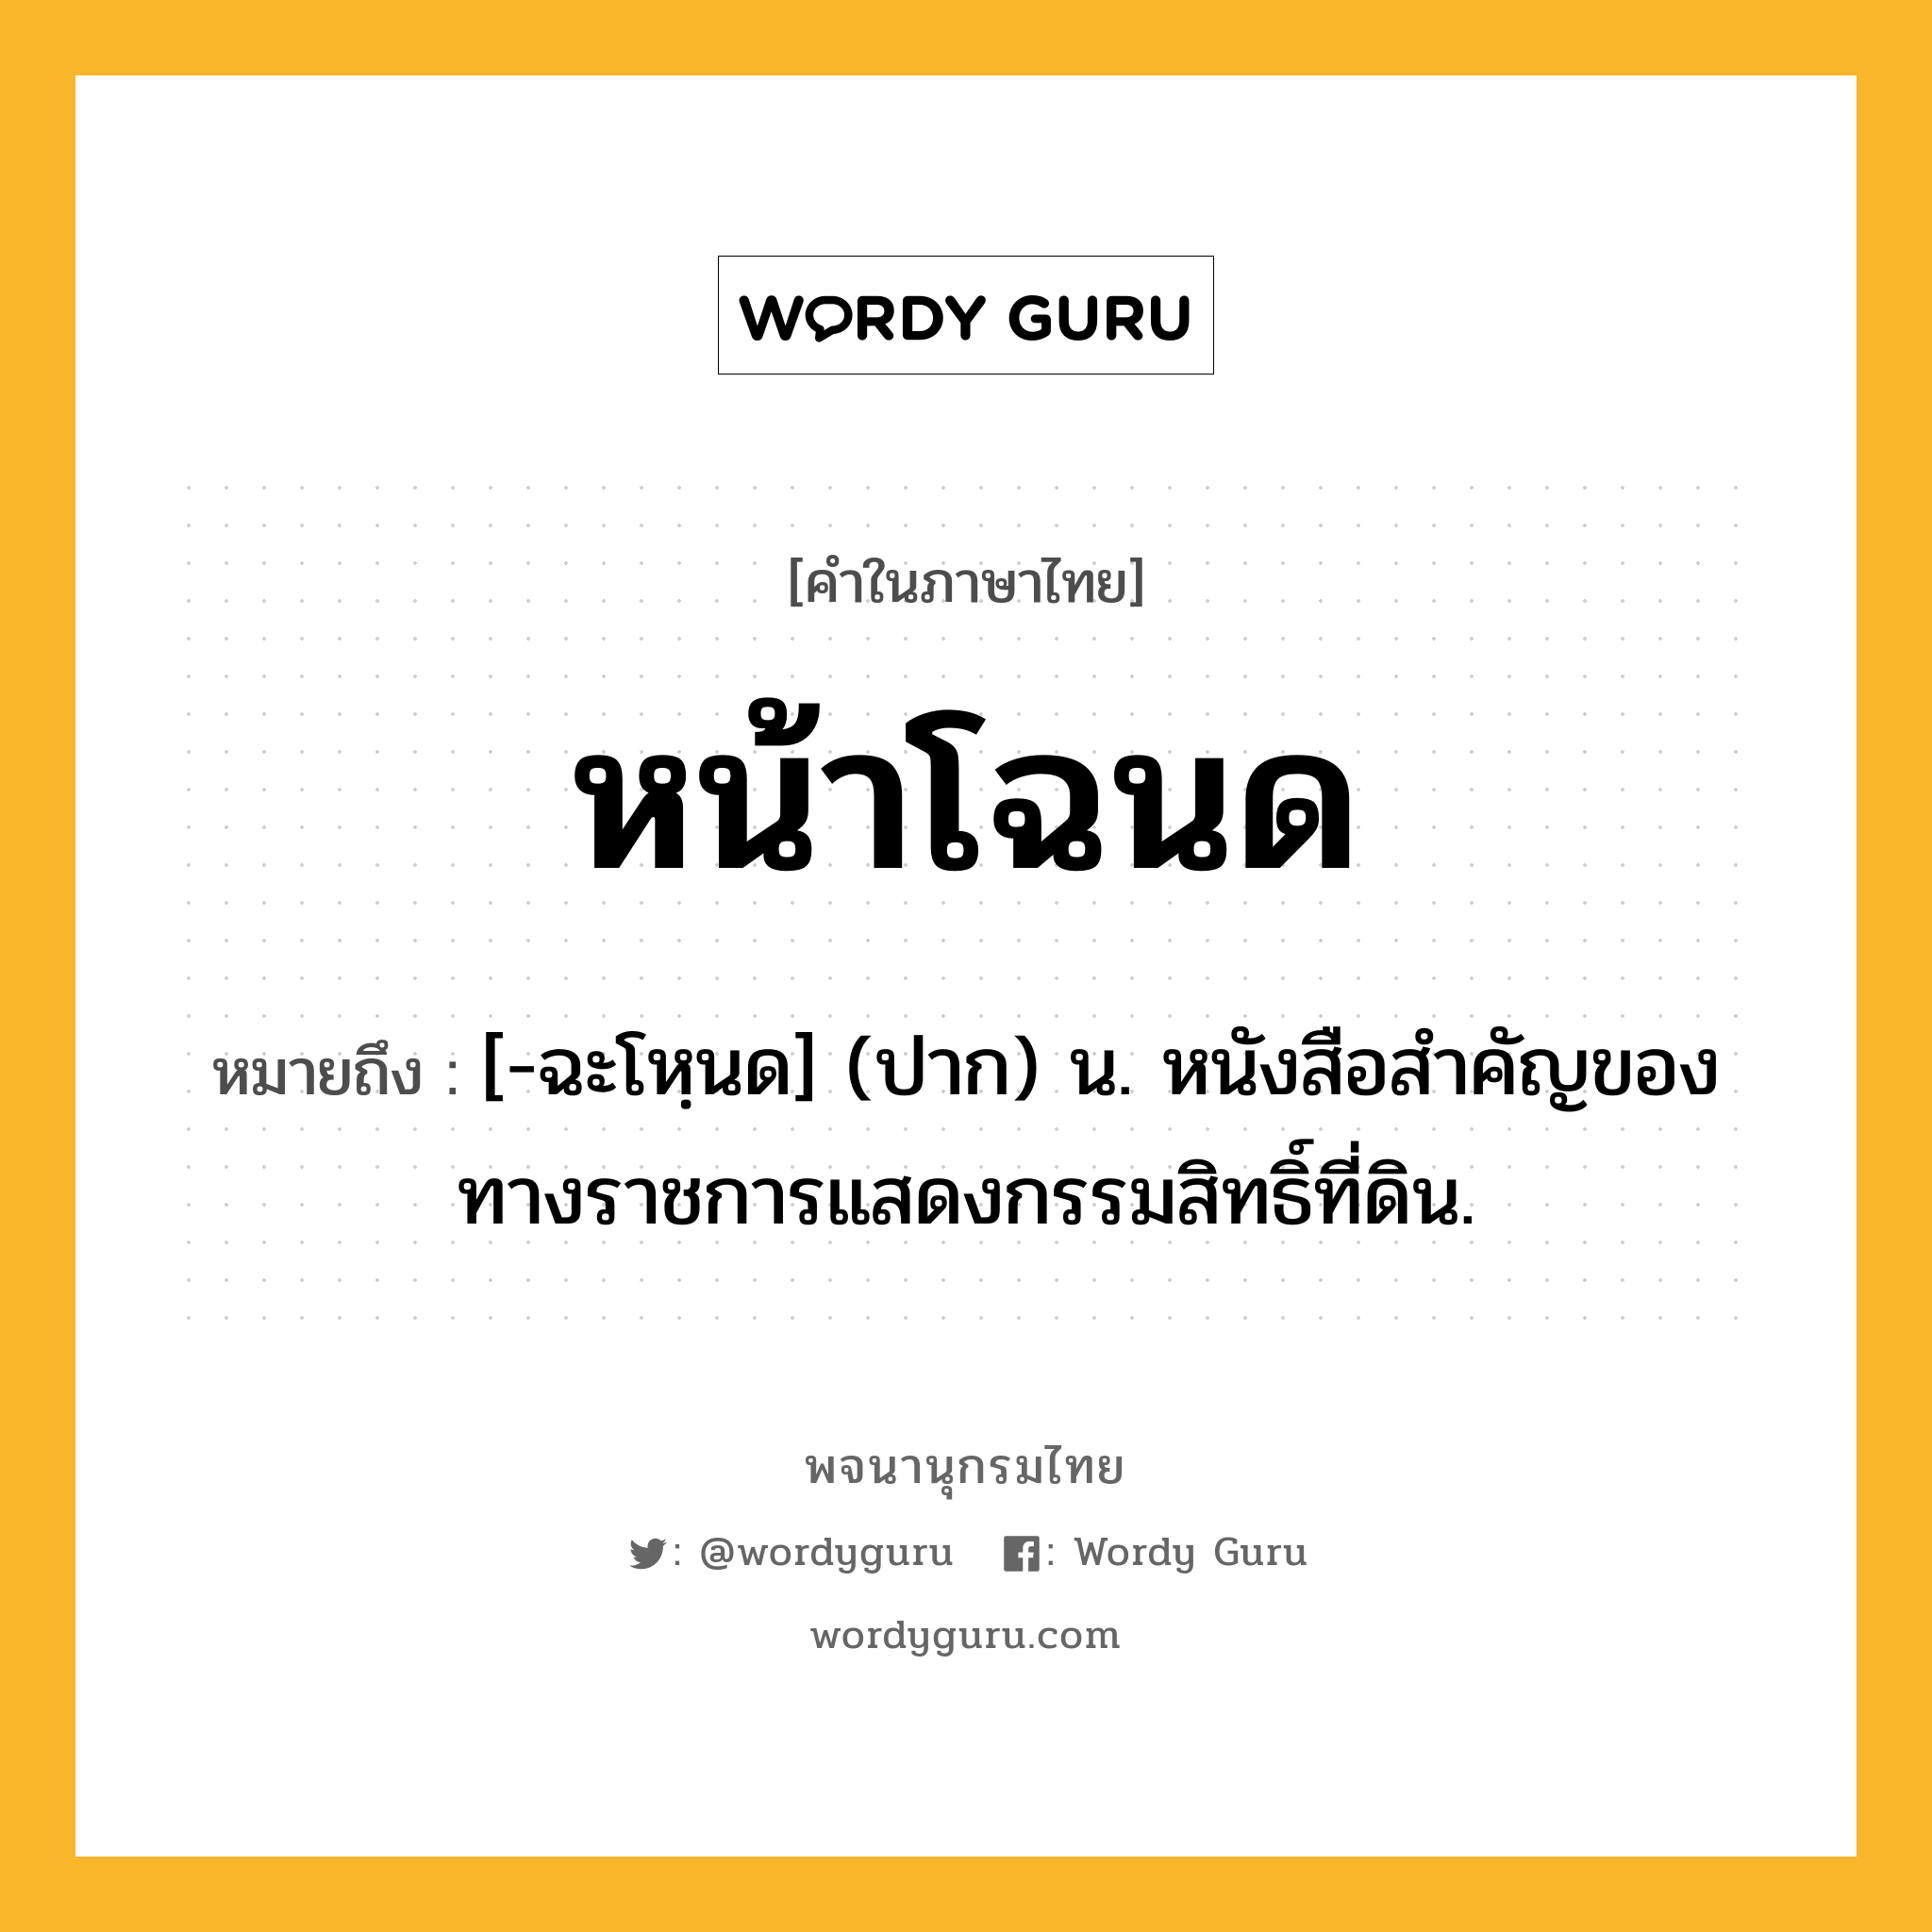 หน้าโฉนด หมายถึงอะไร?, คำในภาษาไทย หน้าโฉนด หมายถึง [-ฉะโหฺนด] (ปาก) น. หนังสือสำคัญของทางราชการแสดงกรรมสิทธิ์ที่ดิน.